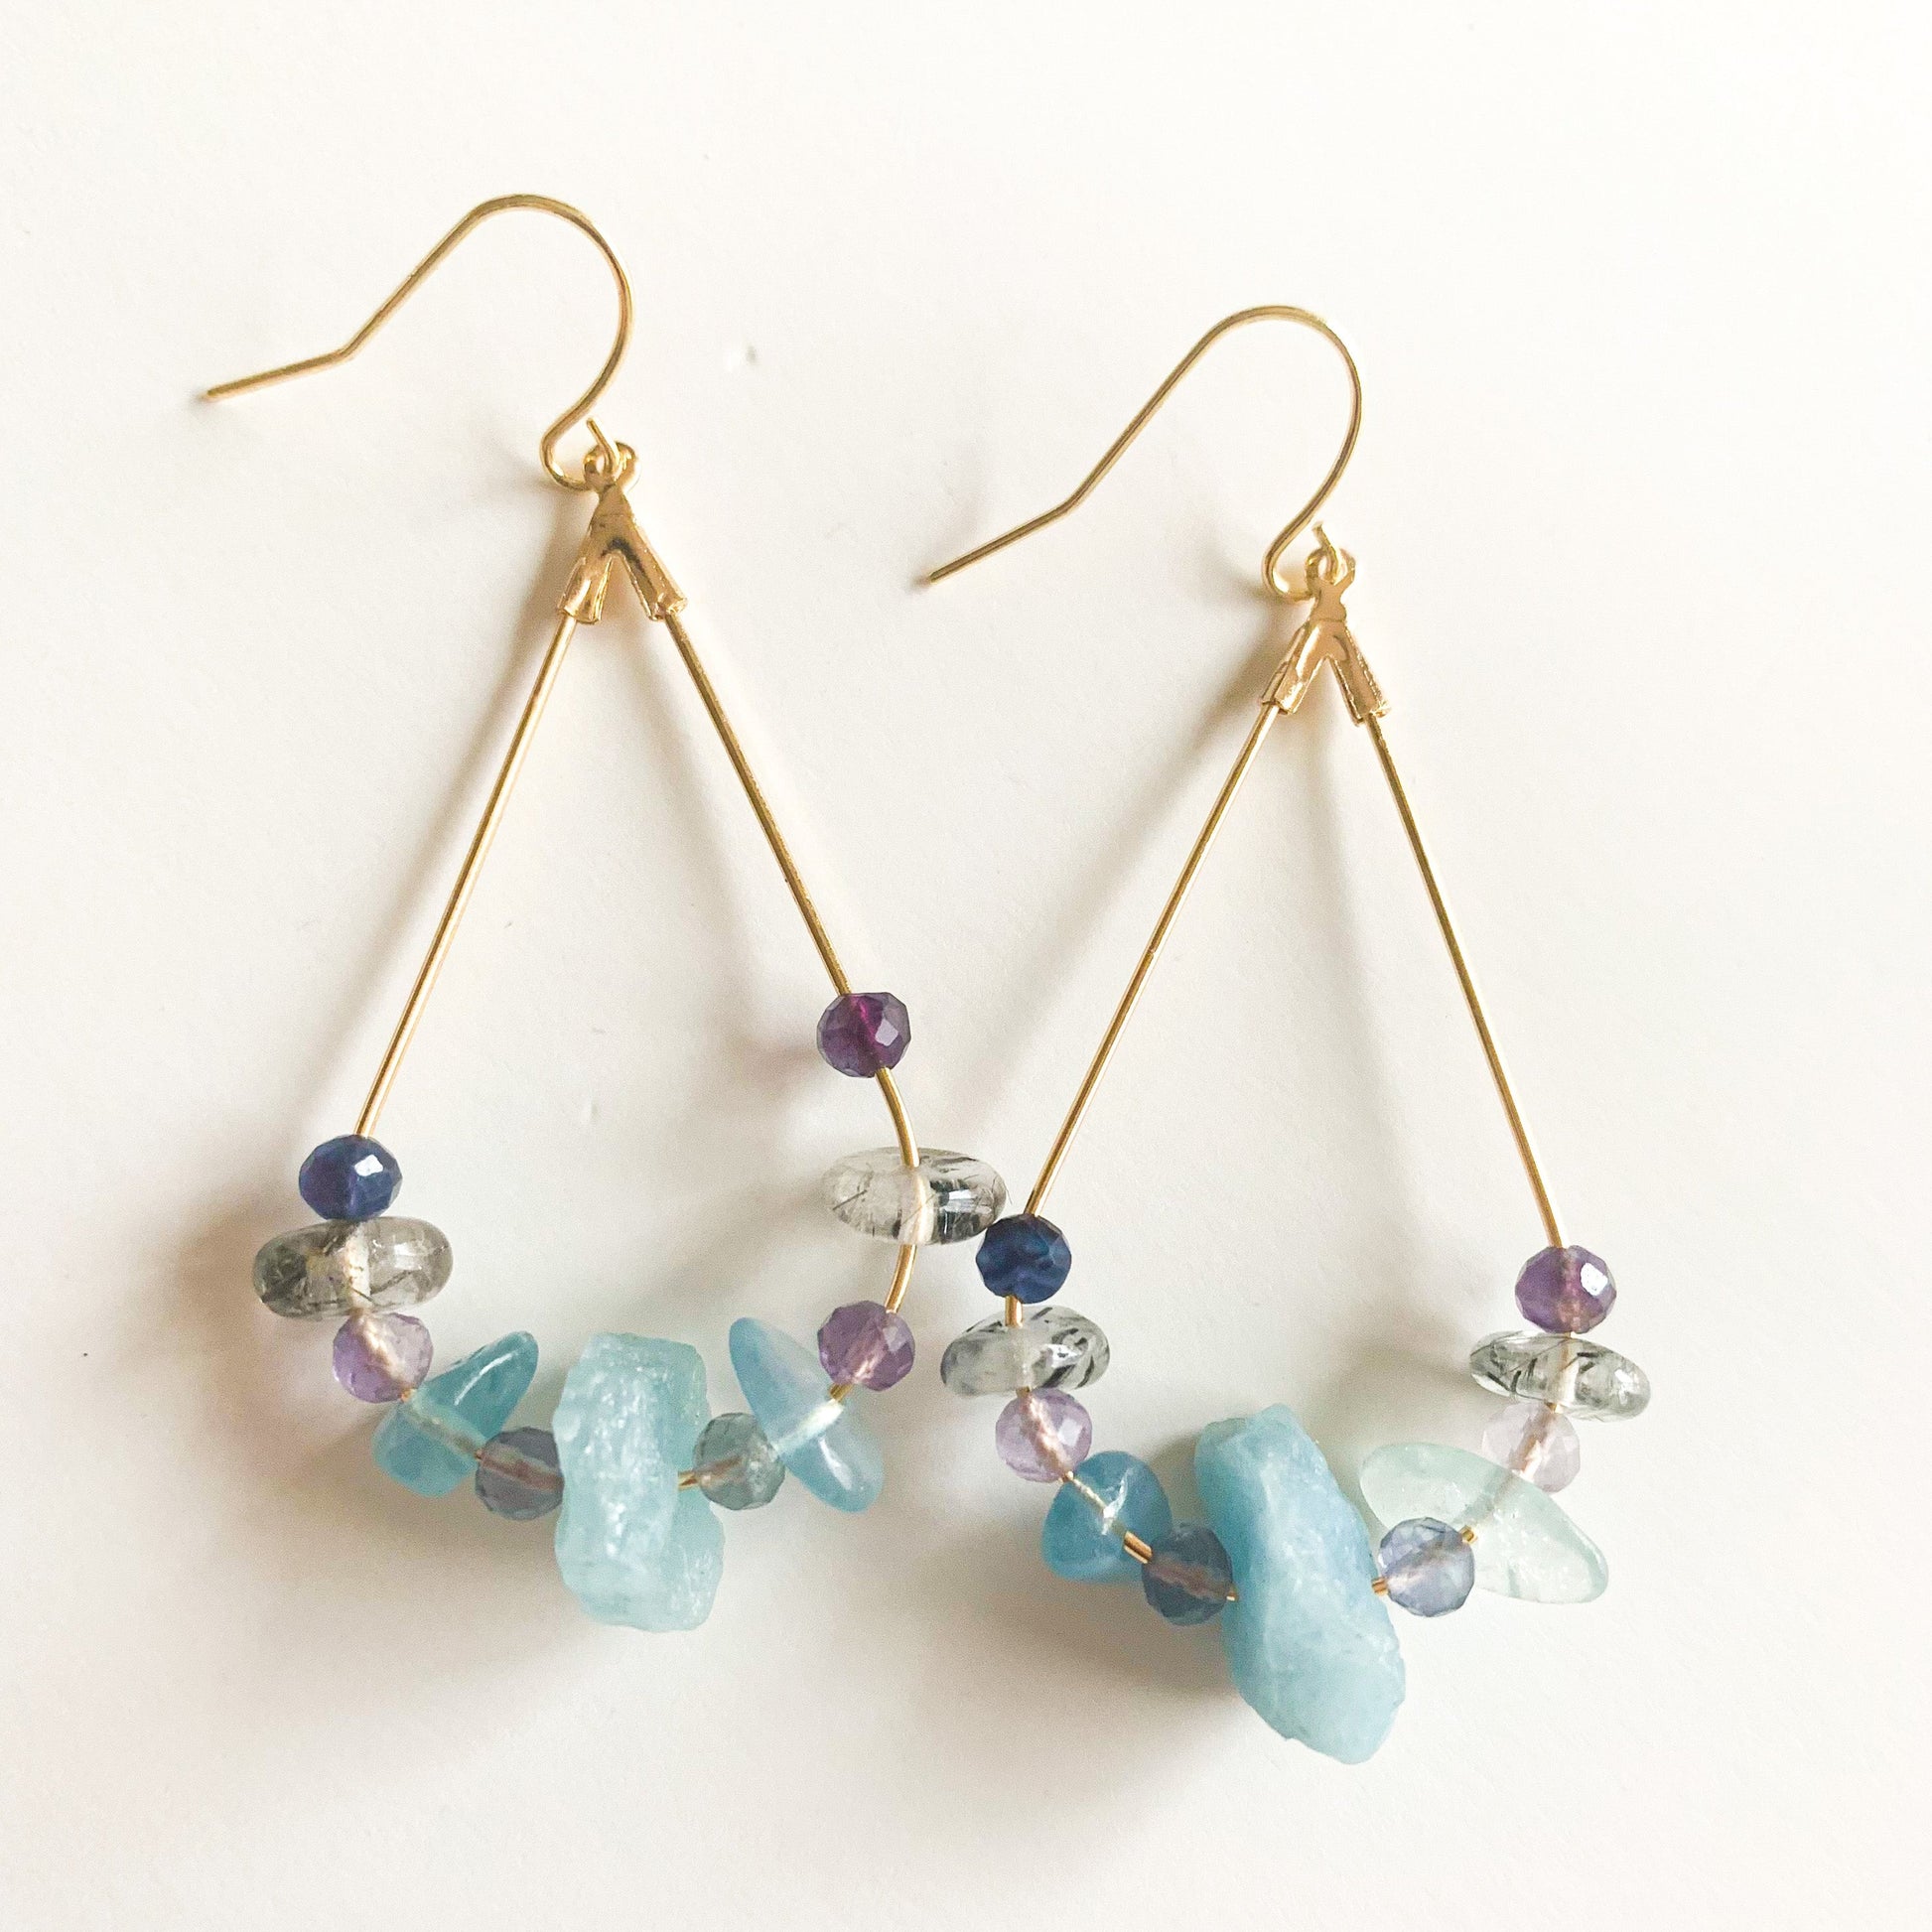 Stylish gold teardrop earrings with gemstones